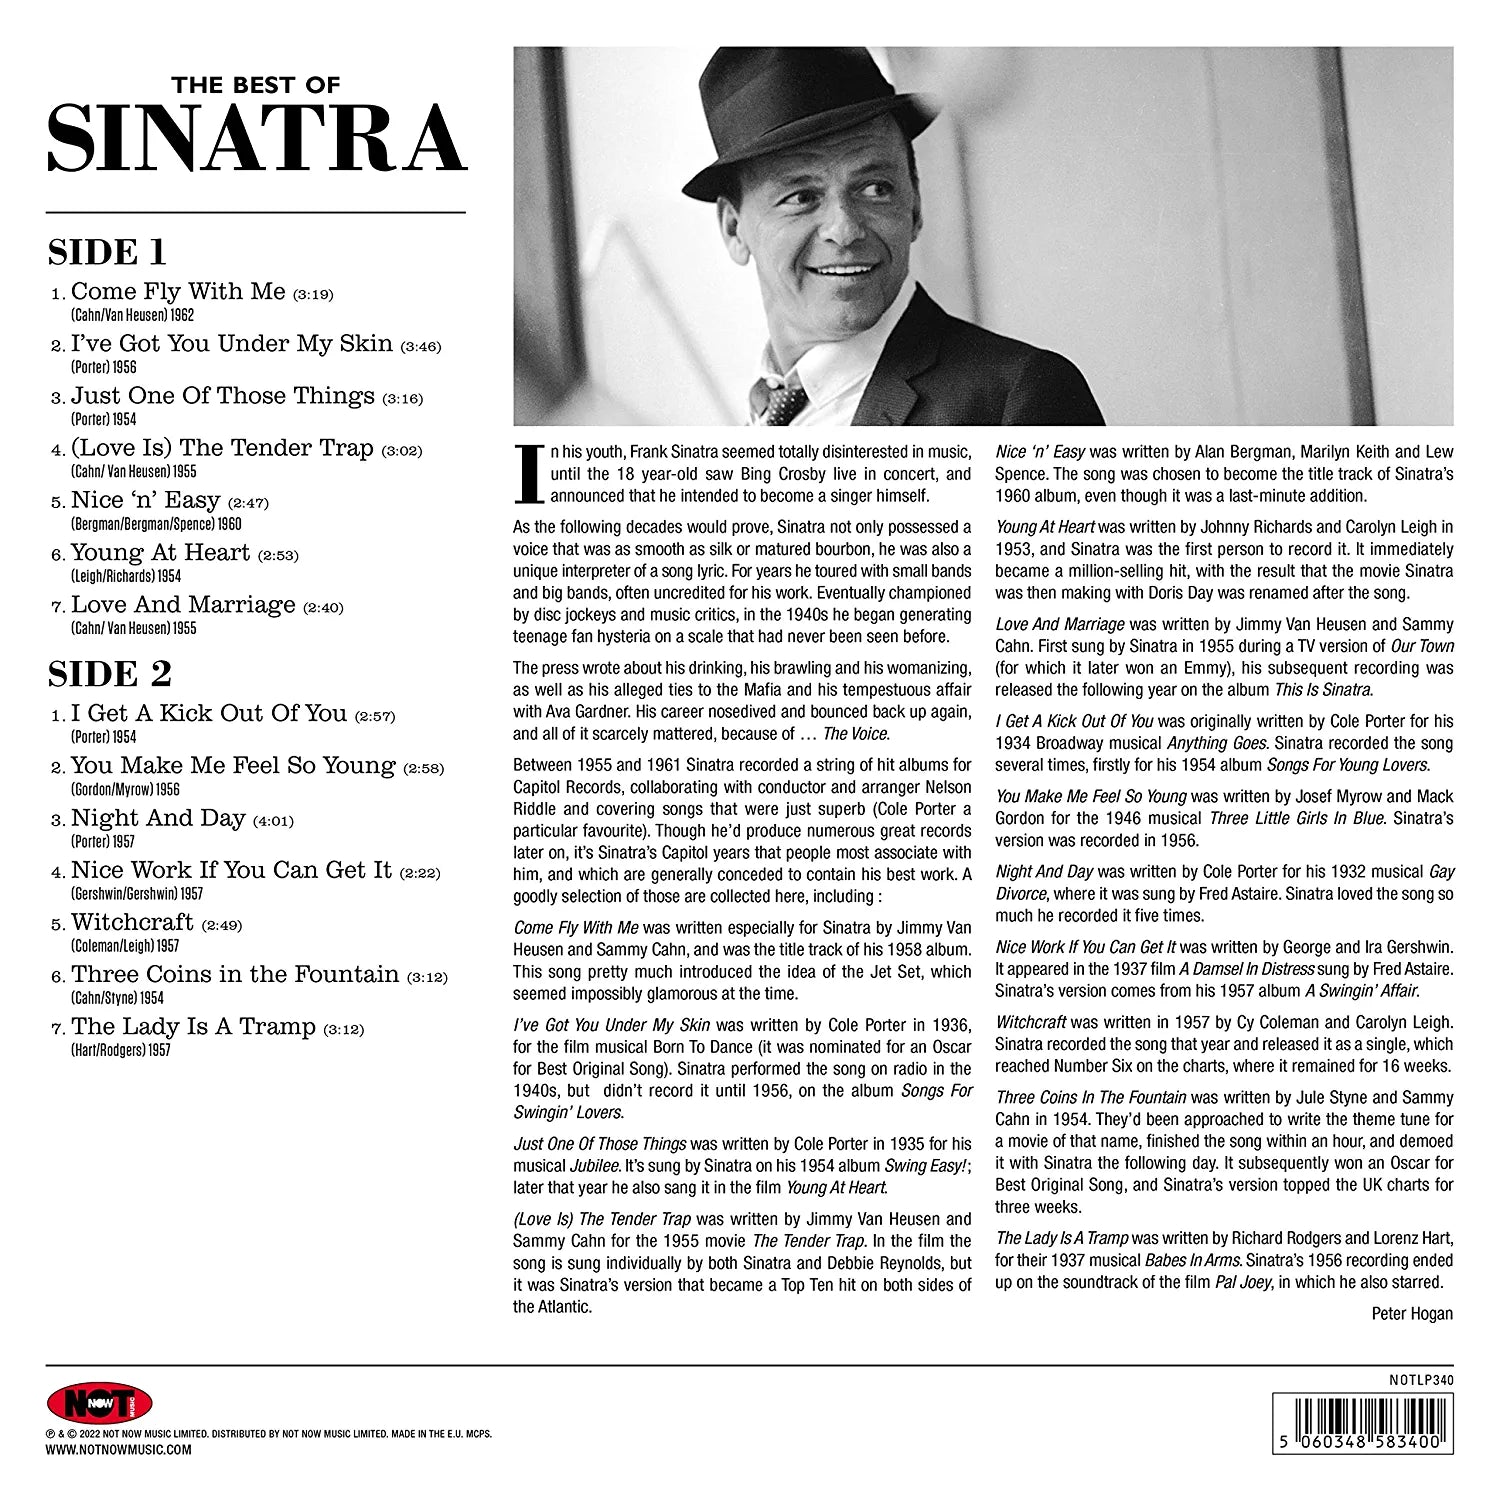 फ़्रैंक सिनात्रा द बेस्ट ऑफ़ सिनात्रा रंगीन एल.पी